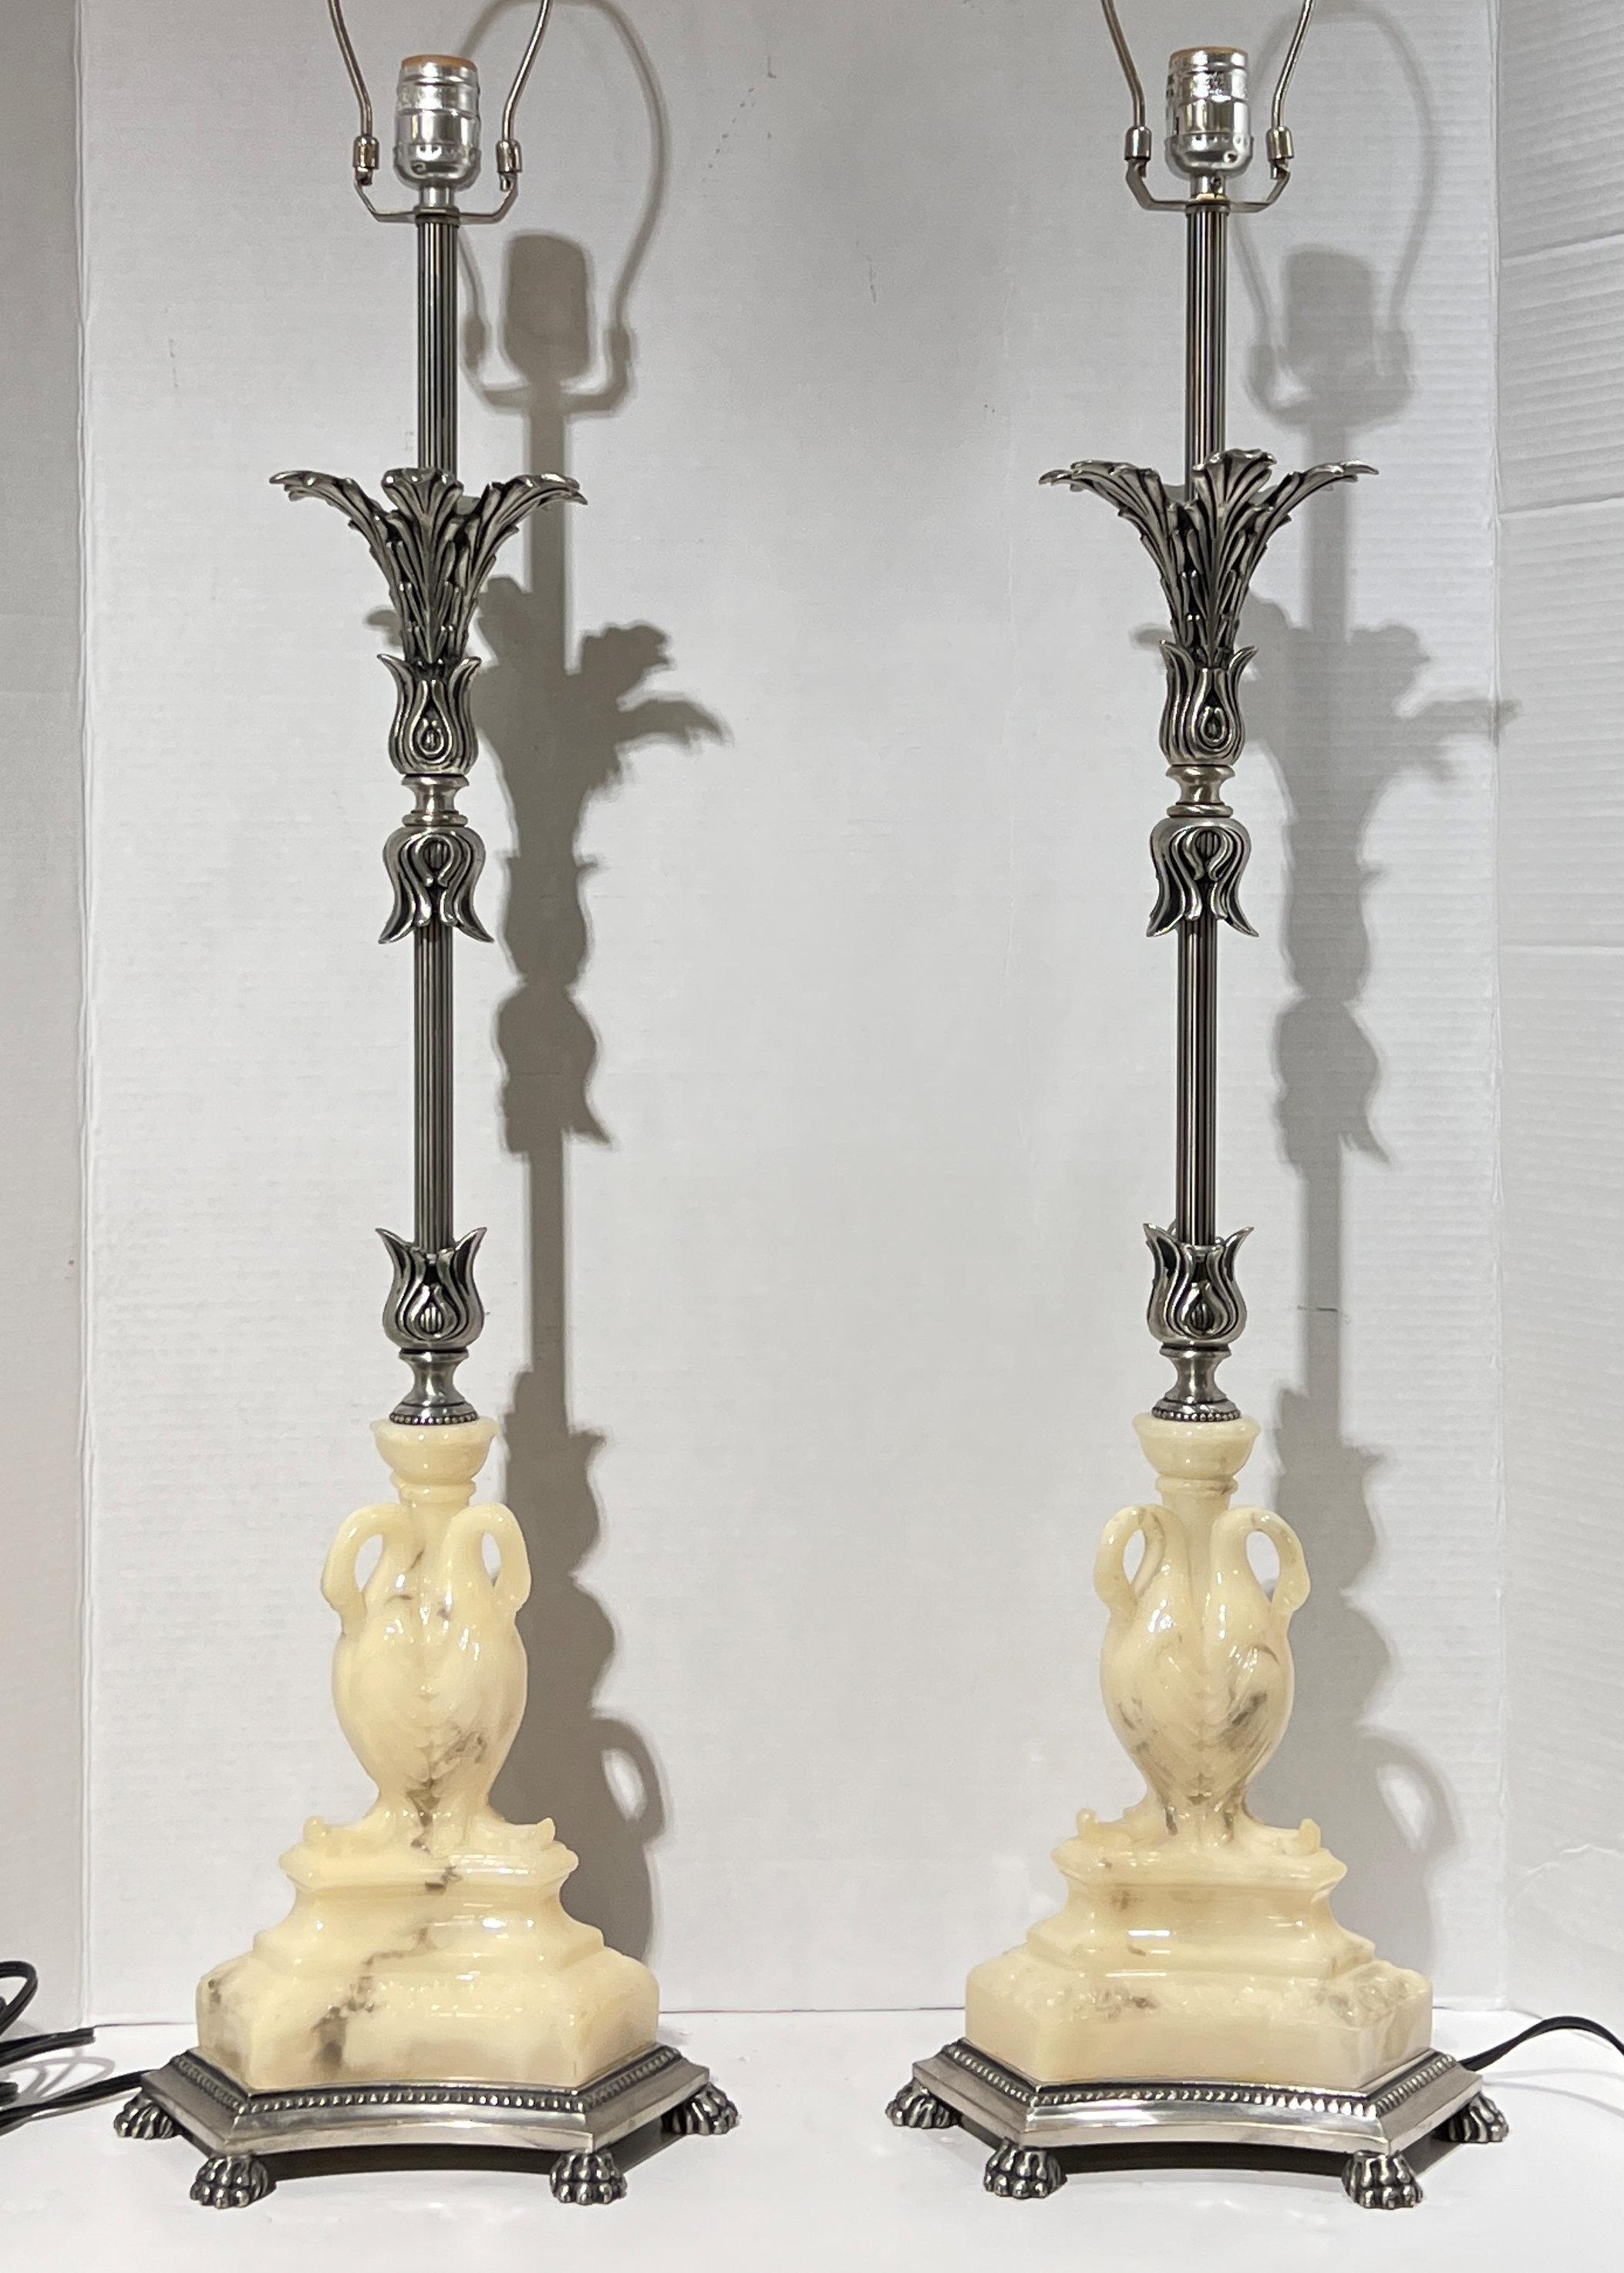 Paire de lampes de table vintage en métal argenté de style néoclassique avec composition moulée.  des figures de cygnes.  Chacun est en excellent état.